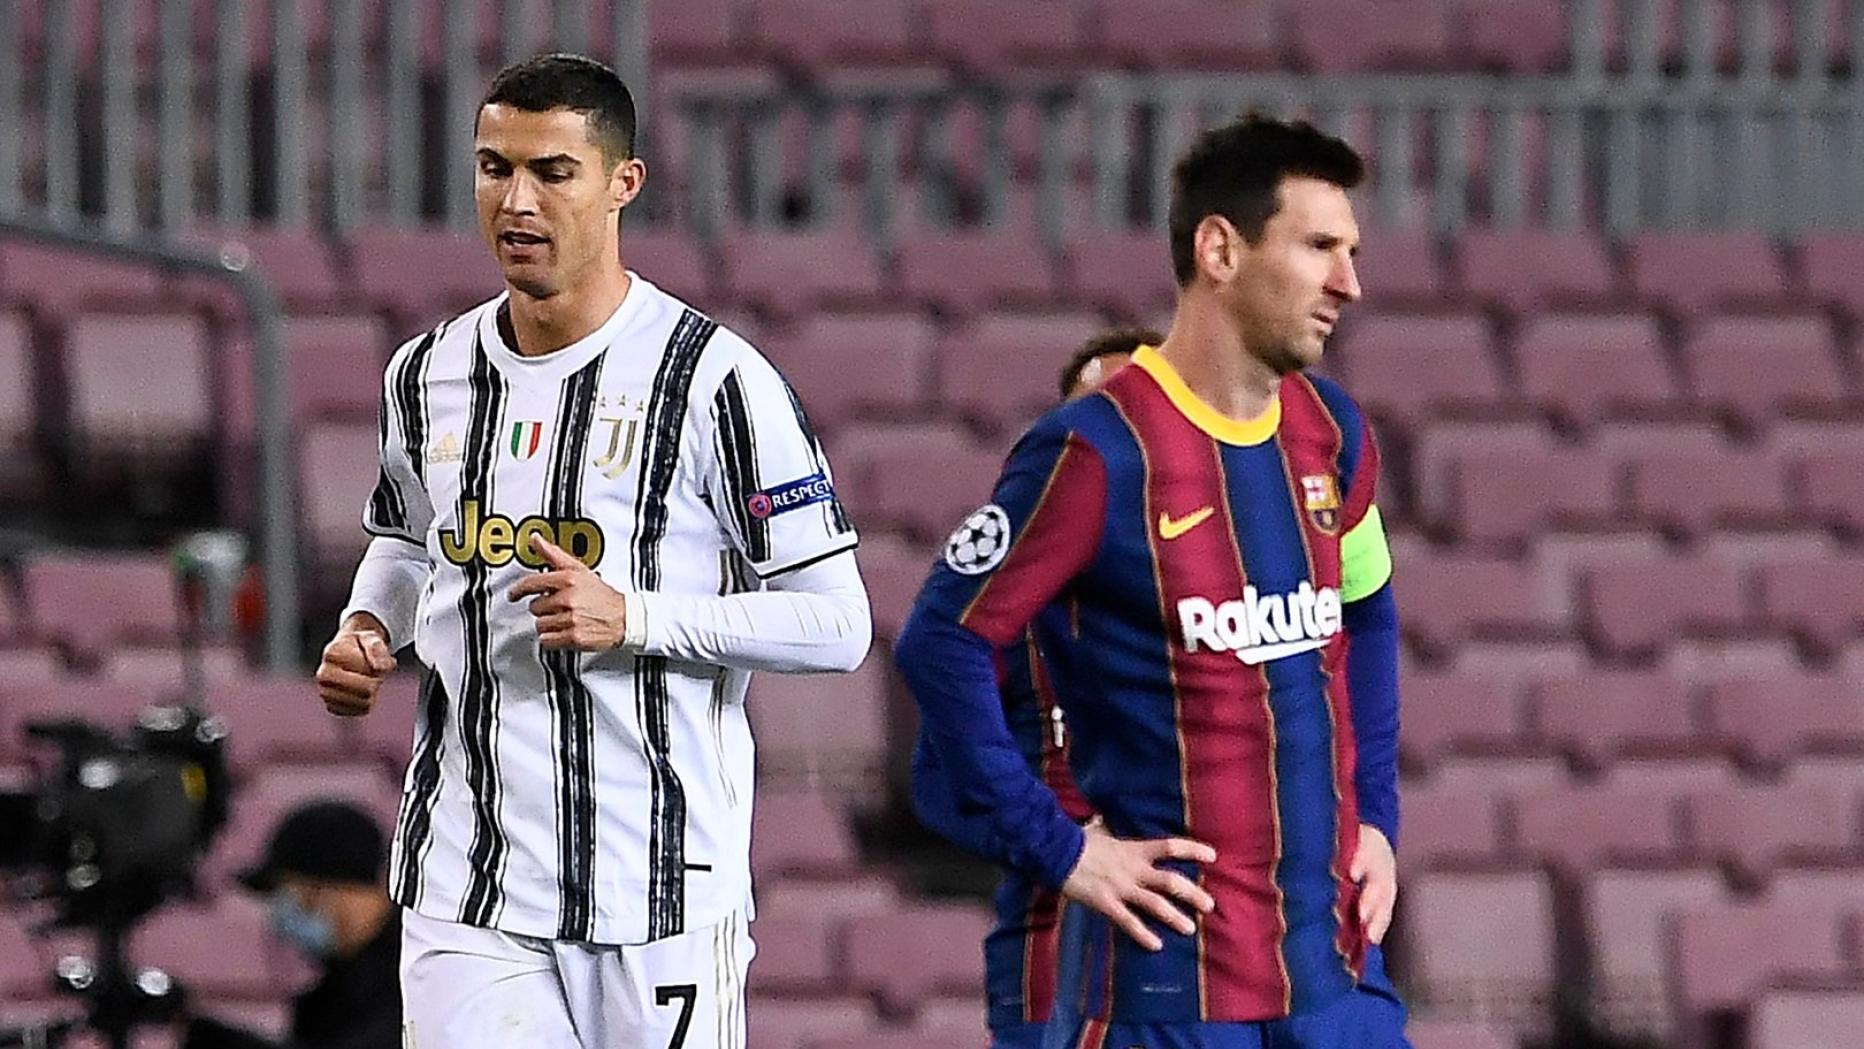 Messi und Ronaldo duellieren sich im Schach 